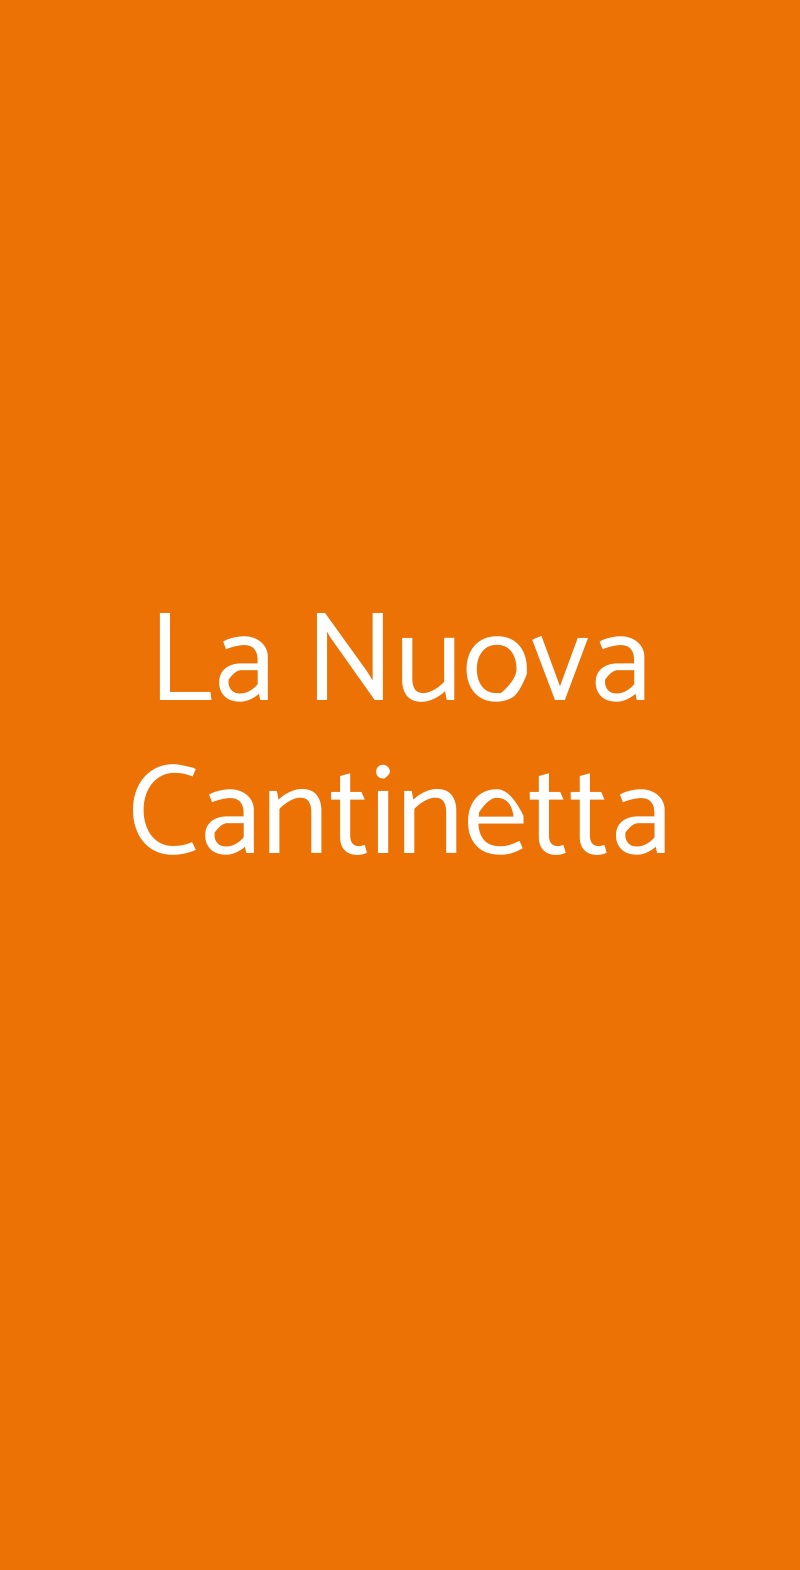 La Nuova Cantinetta Varese menù 1 pagina